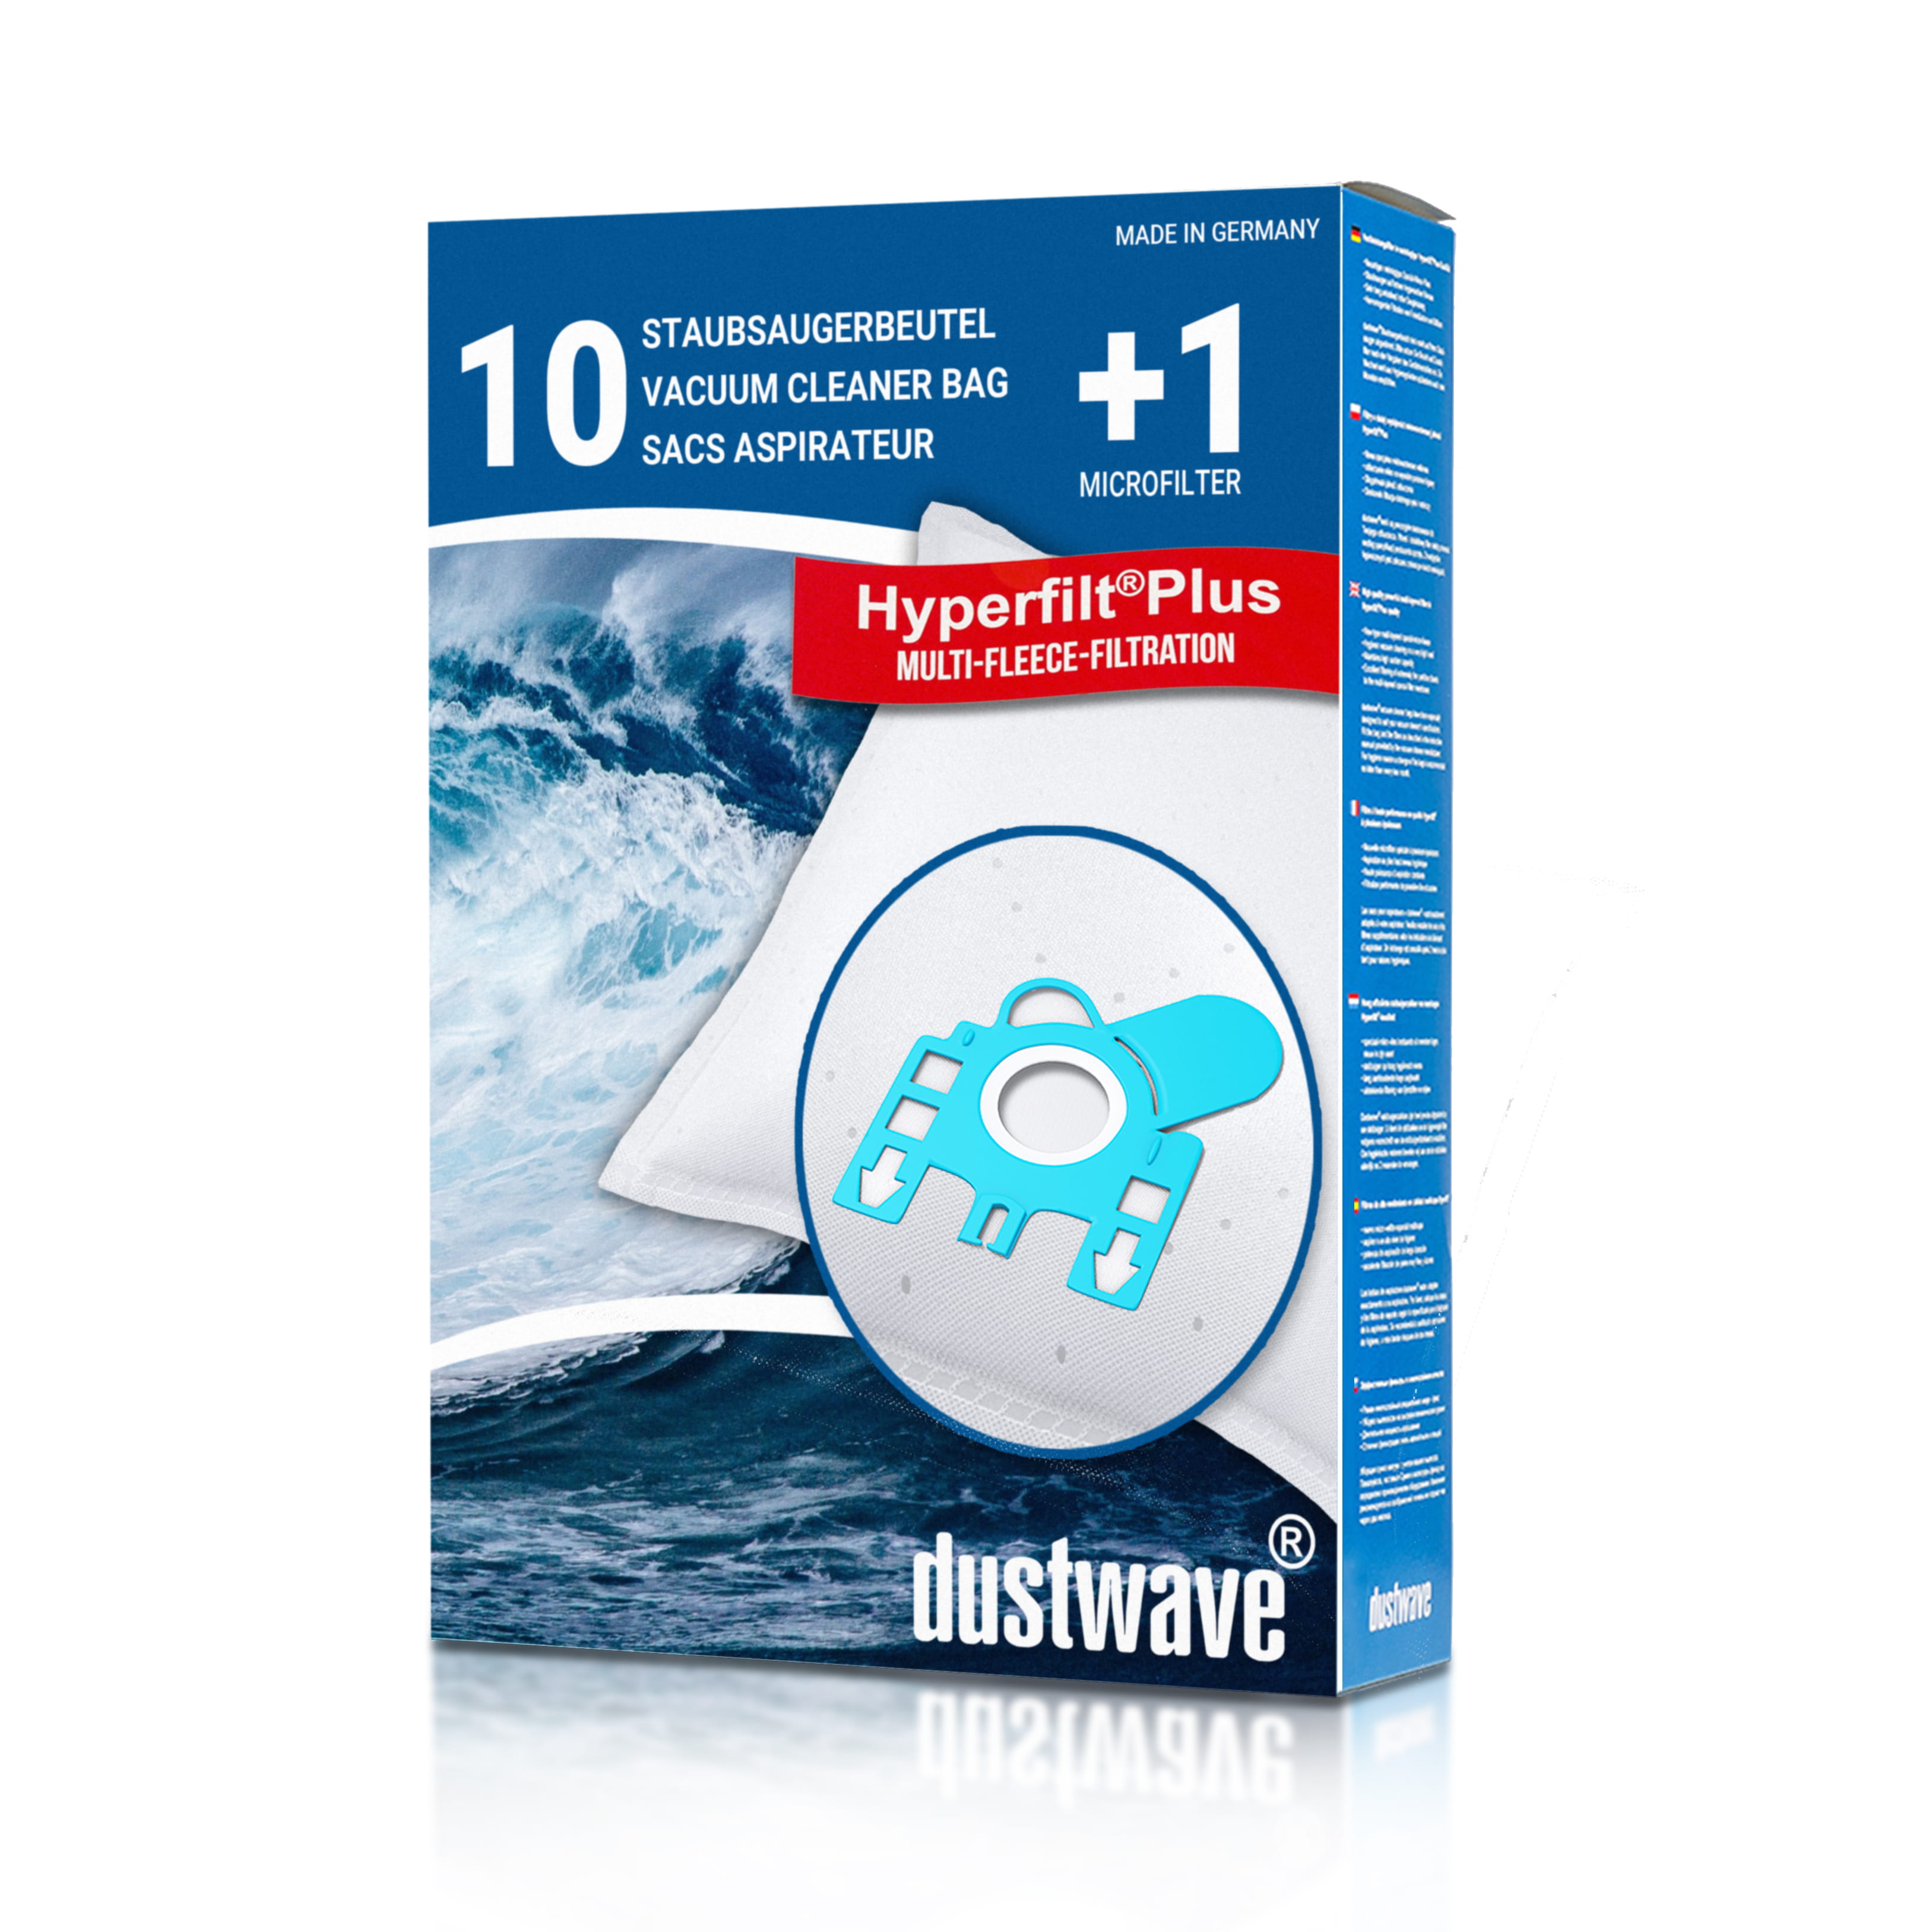 Dustwave® 10 Staubsaugerbeutel für Hoover TTE1200 - TTE2600 Telios Plus Serie - hocheffizient, mehrlagiges Mikrovlies mit Hygieneverschluss - Made in Germany